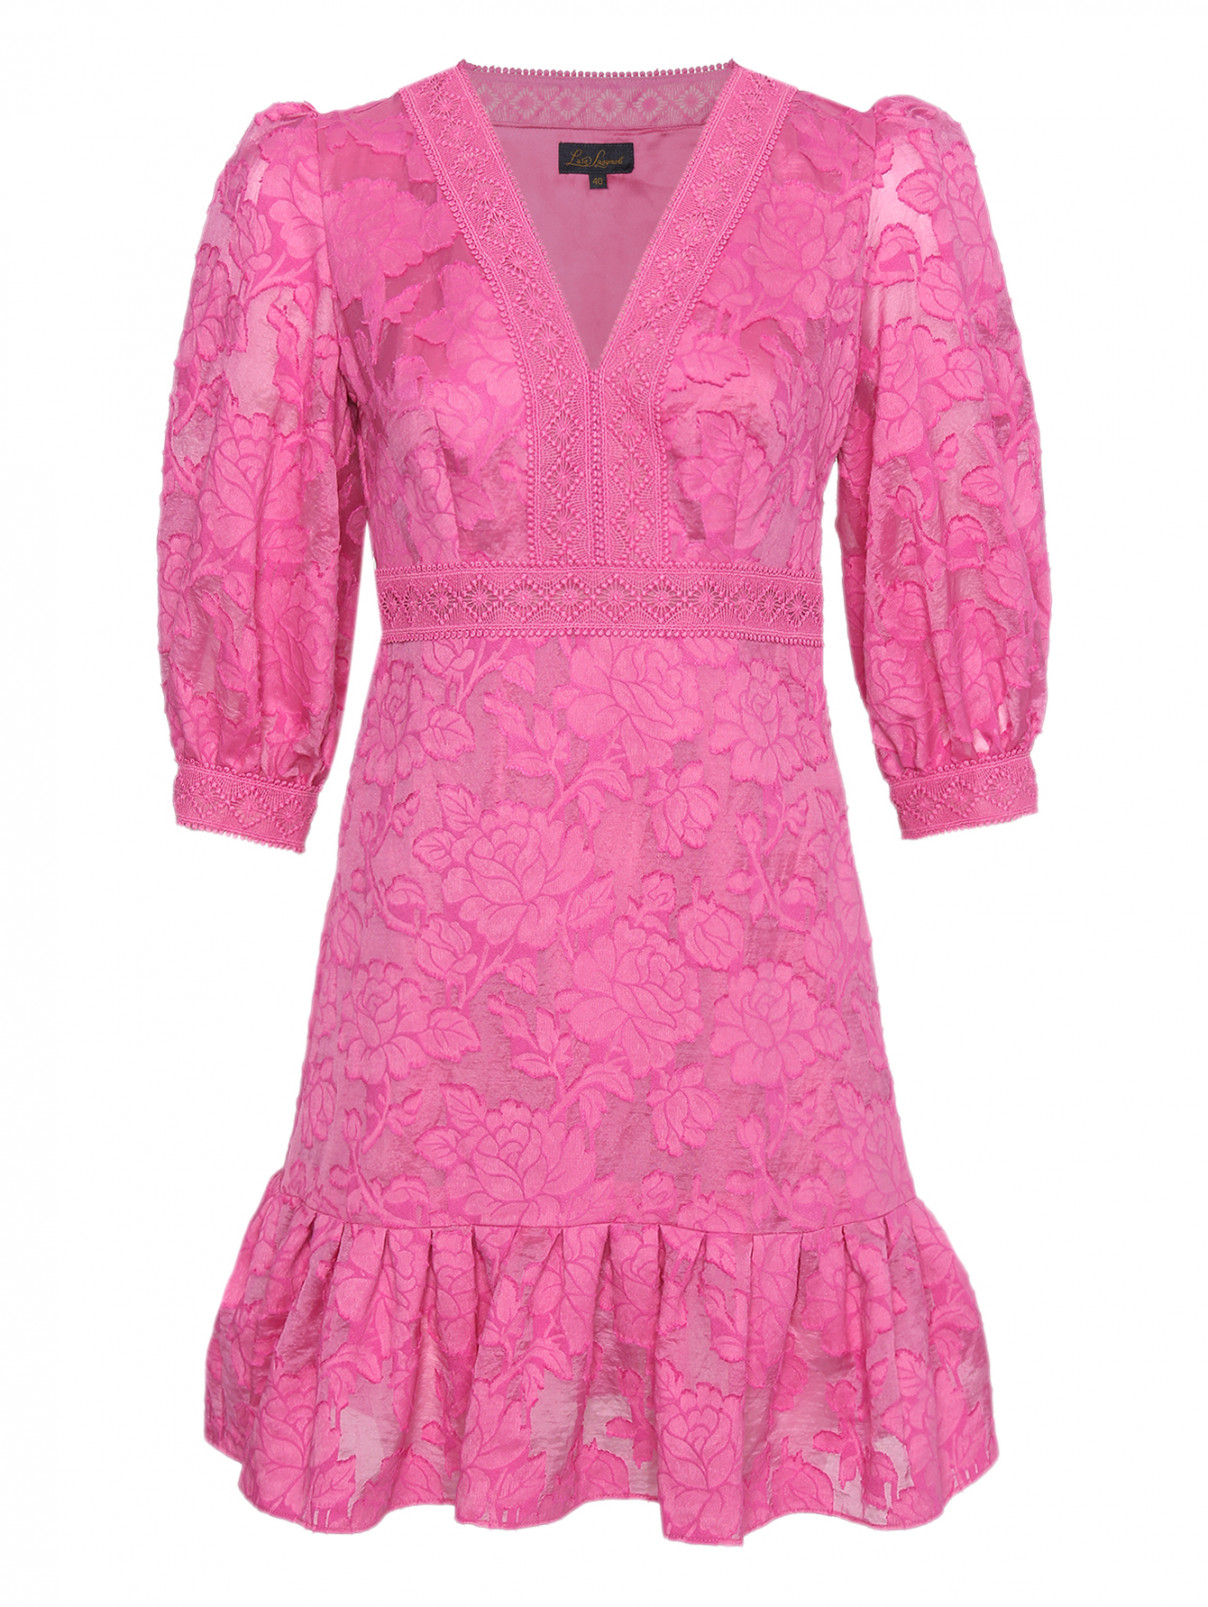 Платье-мини с рукавами 3/4 Luisa Spagnoli  –  Общий вид  – Цвет:  Розовый